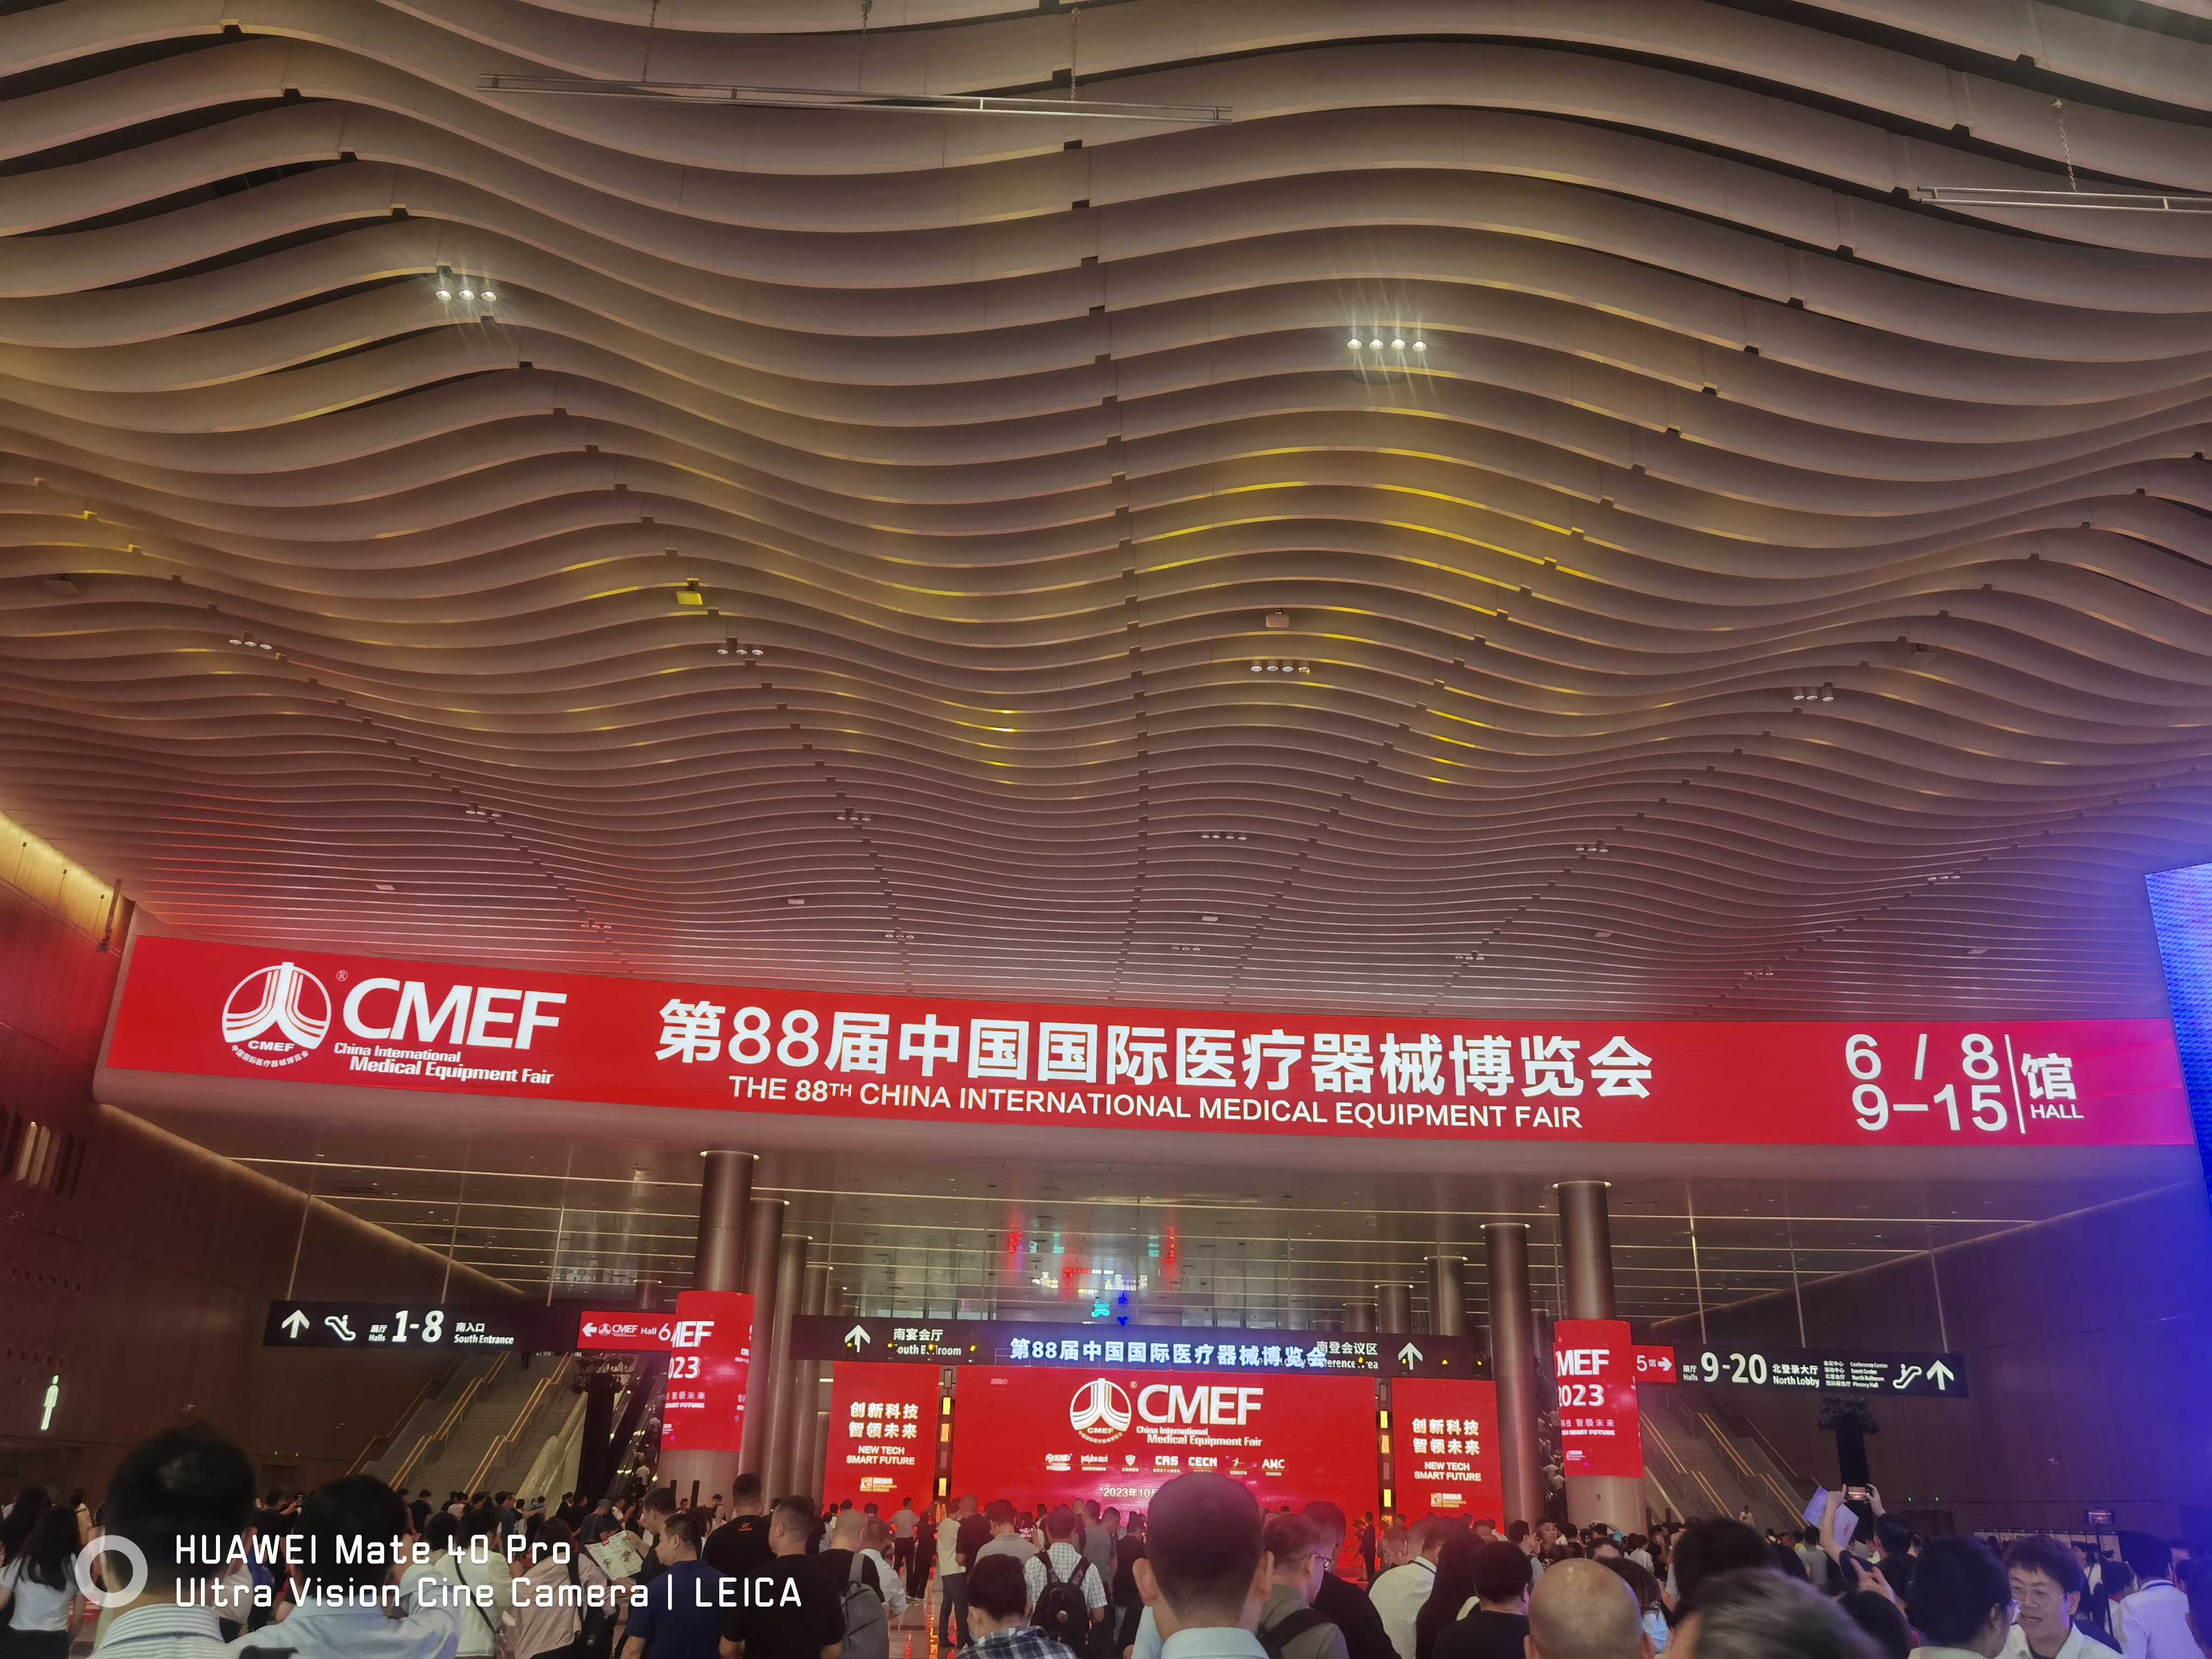 万众瞩目的第88届中国国际医疗器械(秋季)博览会(简称CMEF)在深圳国际会展中心圆满落下帷幕!